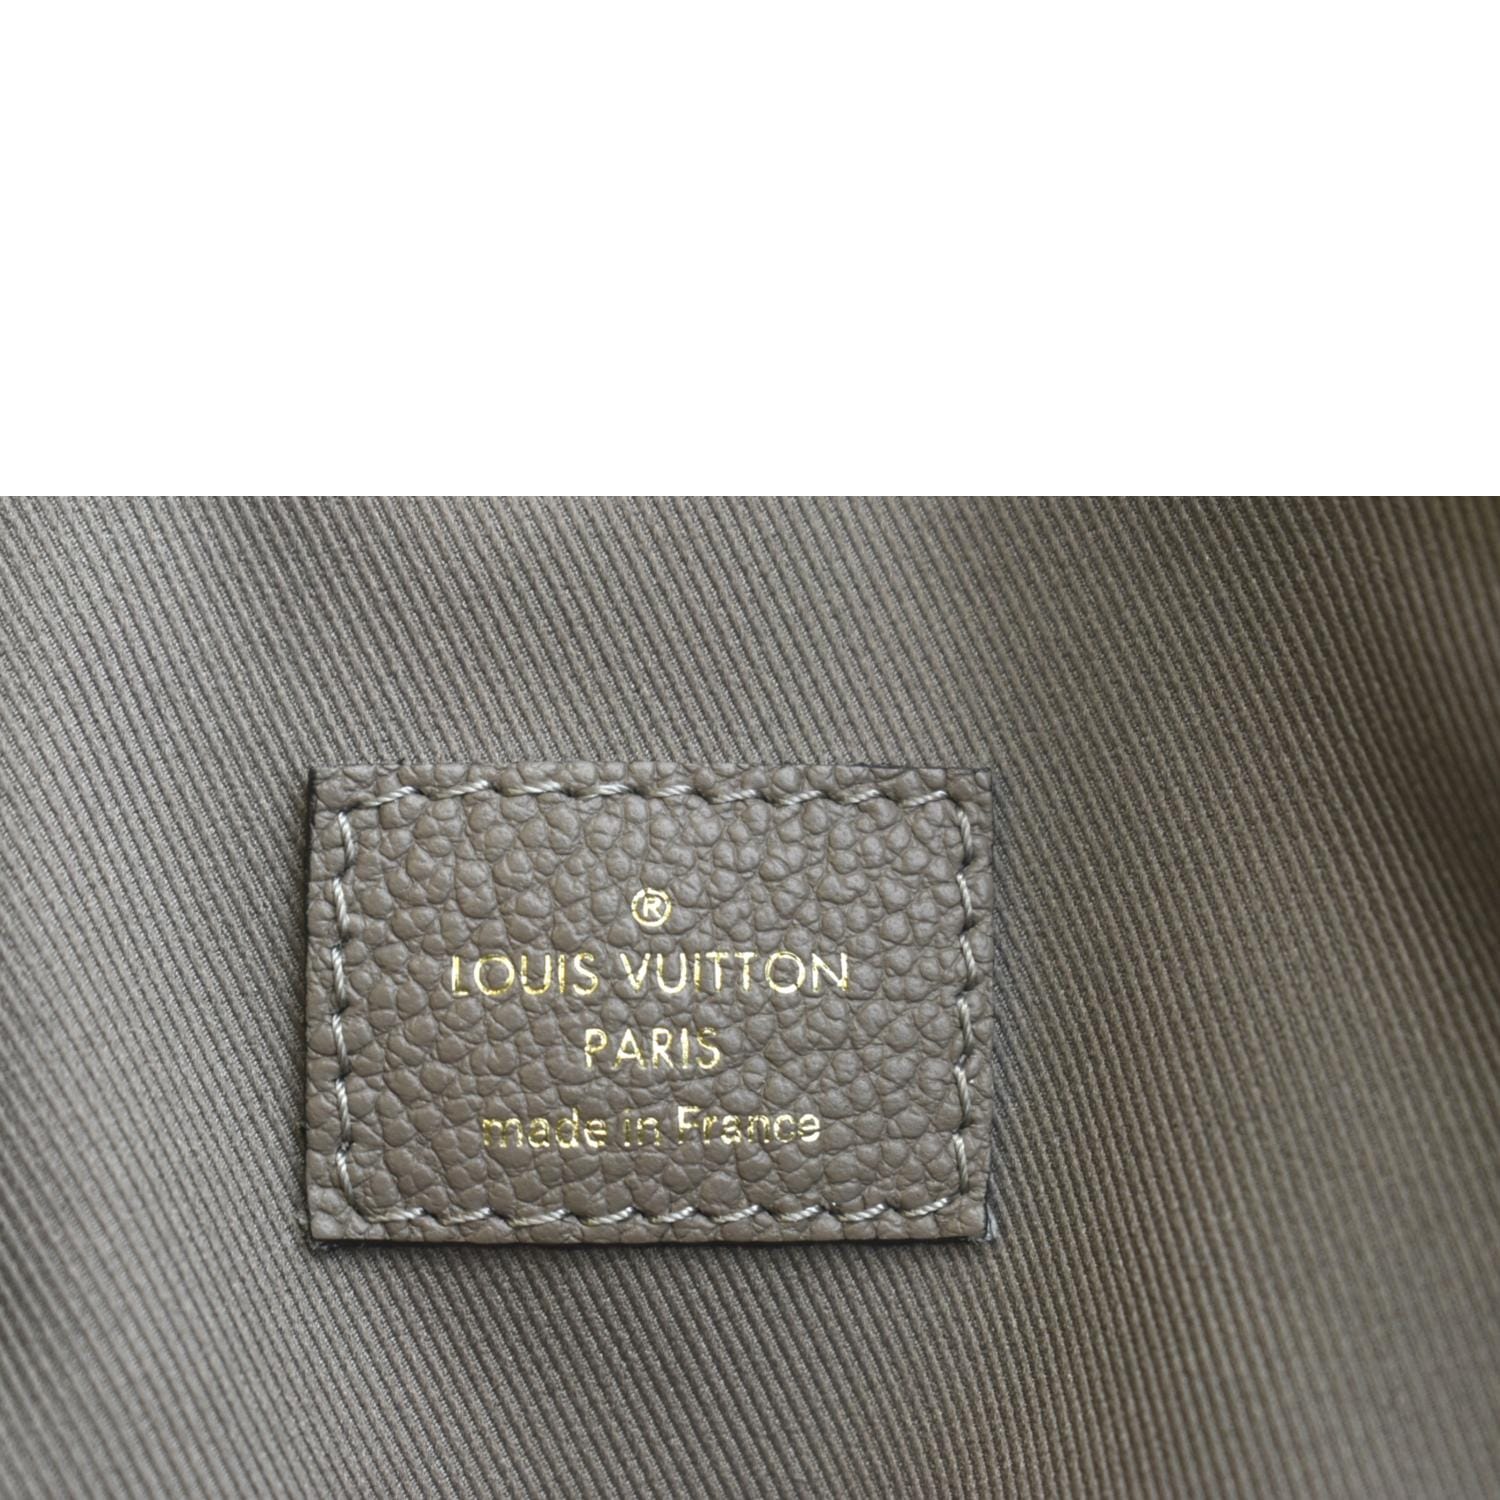 Only 878.00 usd for LOUIS VUITTON Ponthieu PM Empreinte Leather Shoulder  Bag Tourterelle Online at the Shop